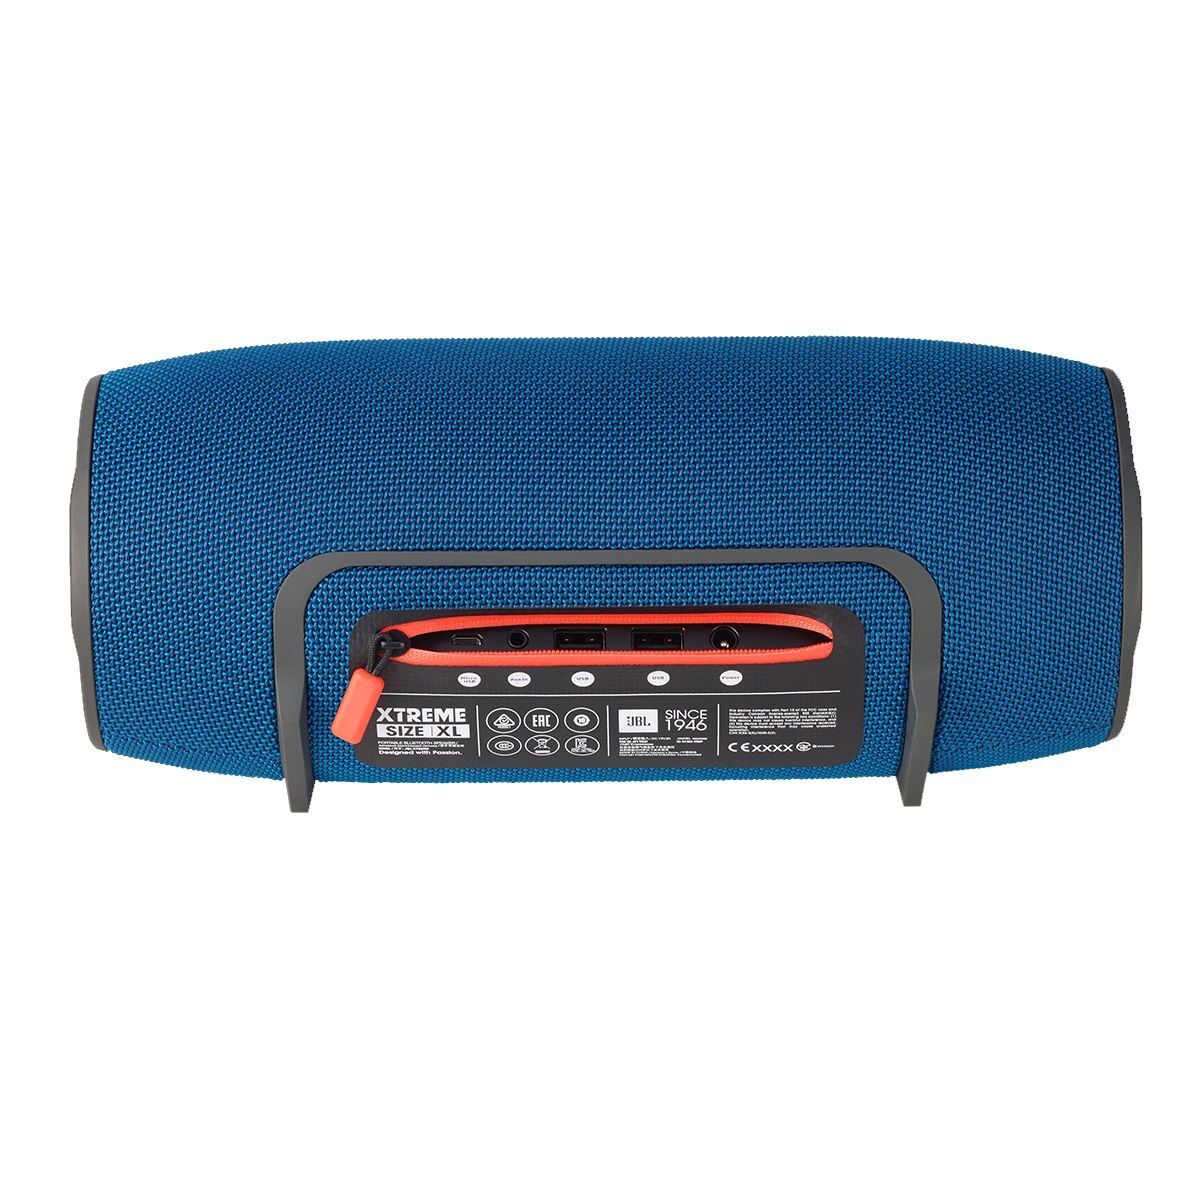 Boxa portabila Bluetooth jBL Extreme 2x20W Albastru